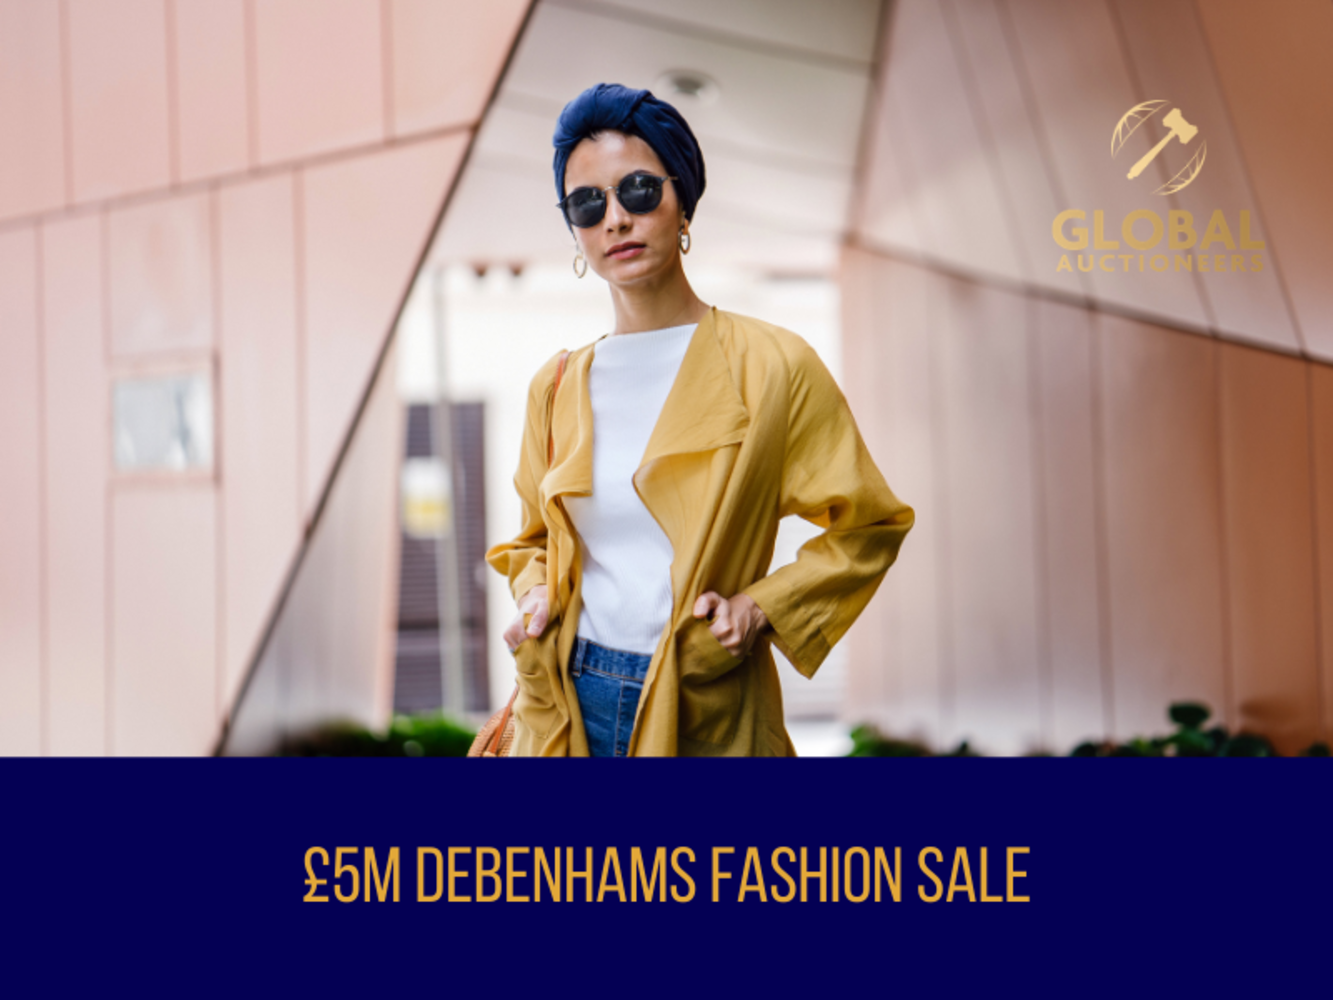 The £5m Debenhams Mega Fashion Sale - 23rd April 2021